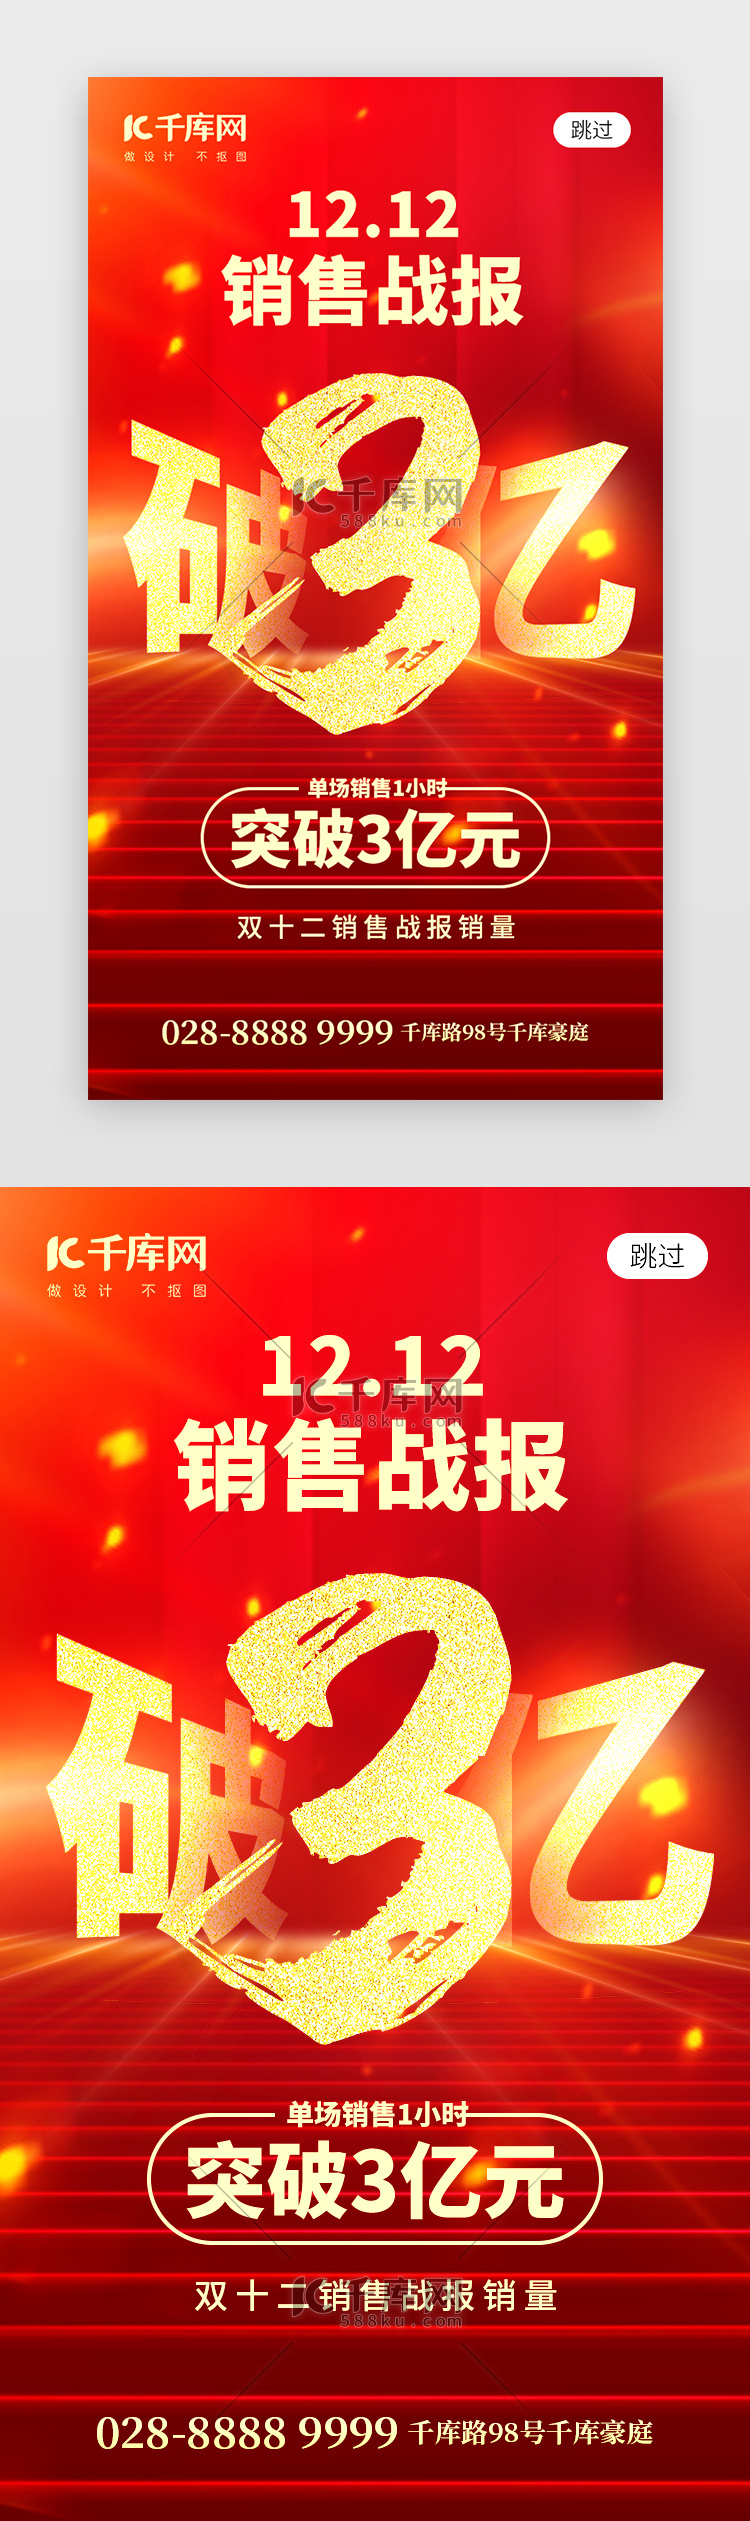 双12销售战报app闪屏创意红色红包